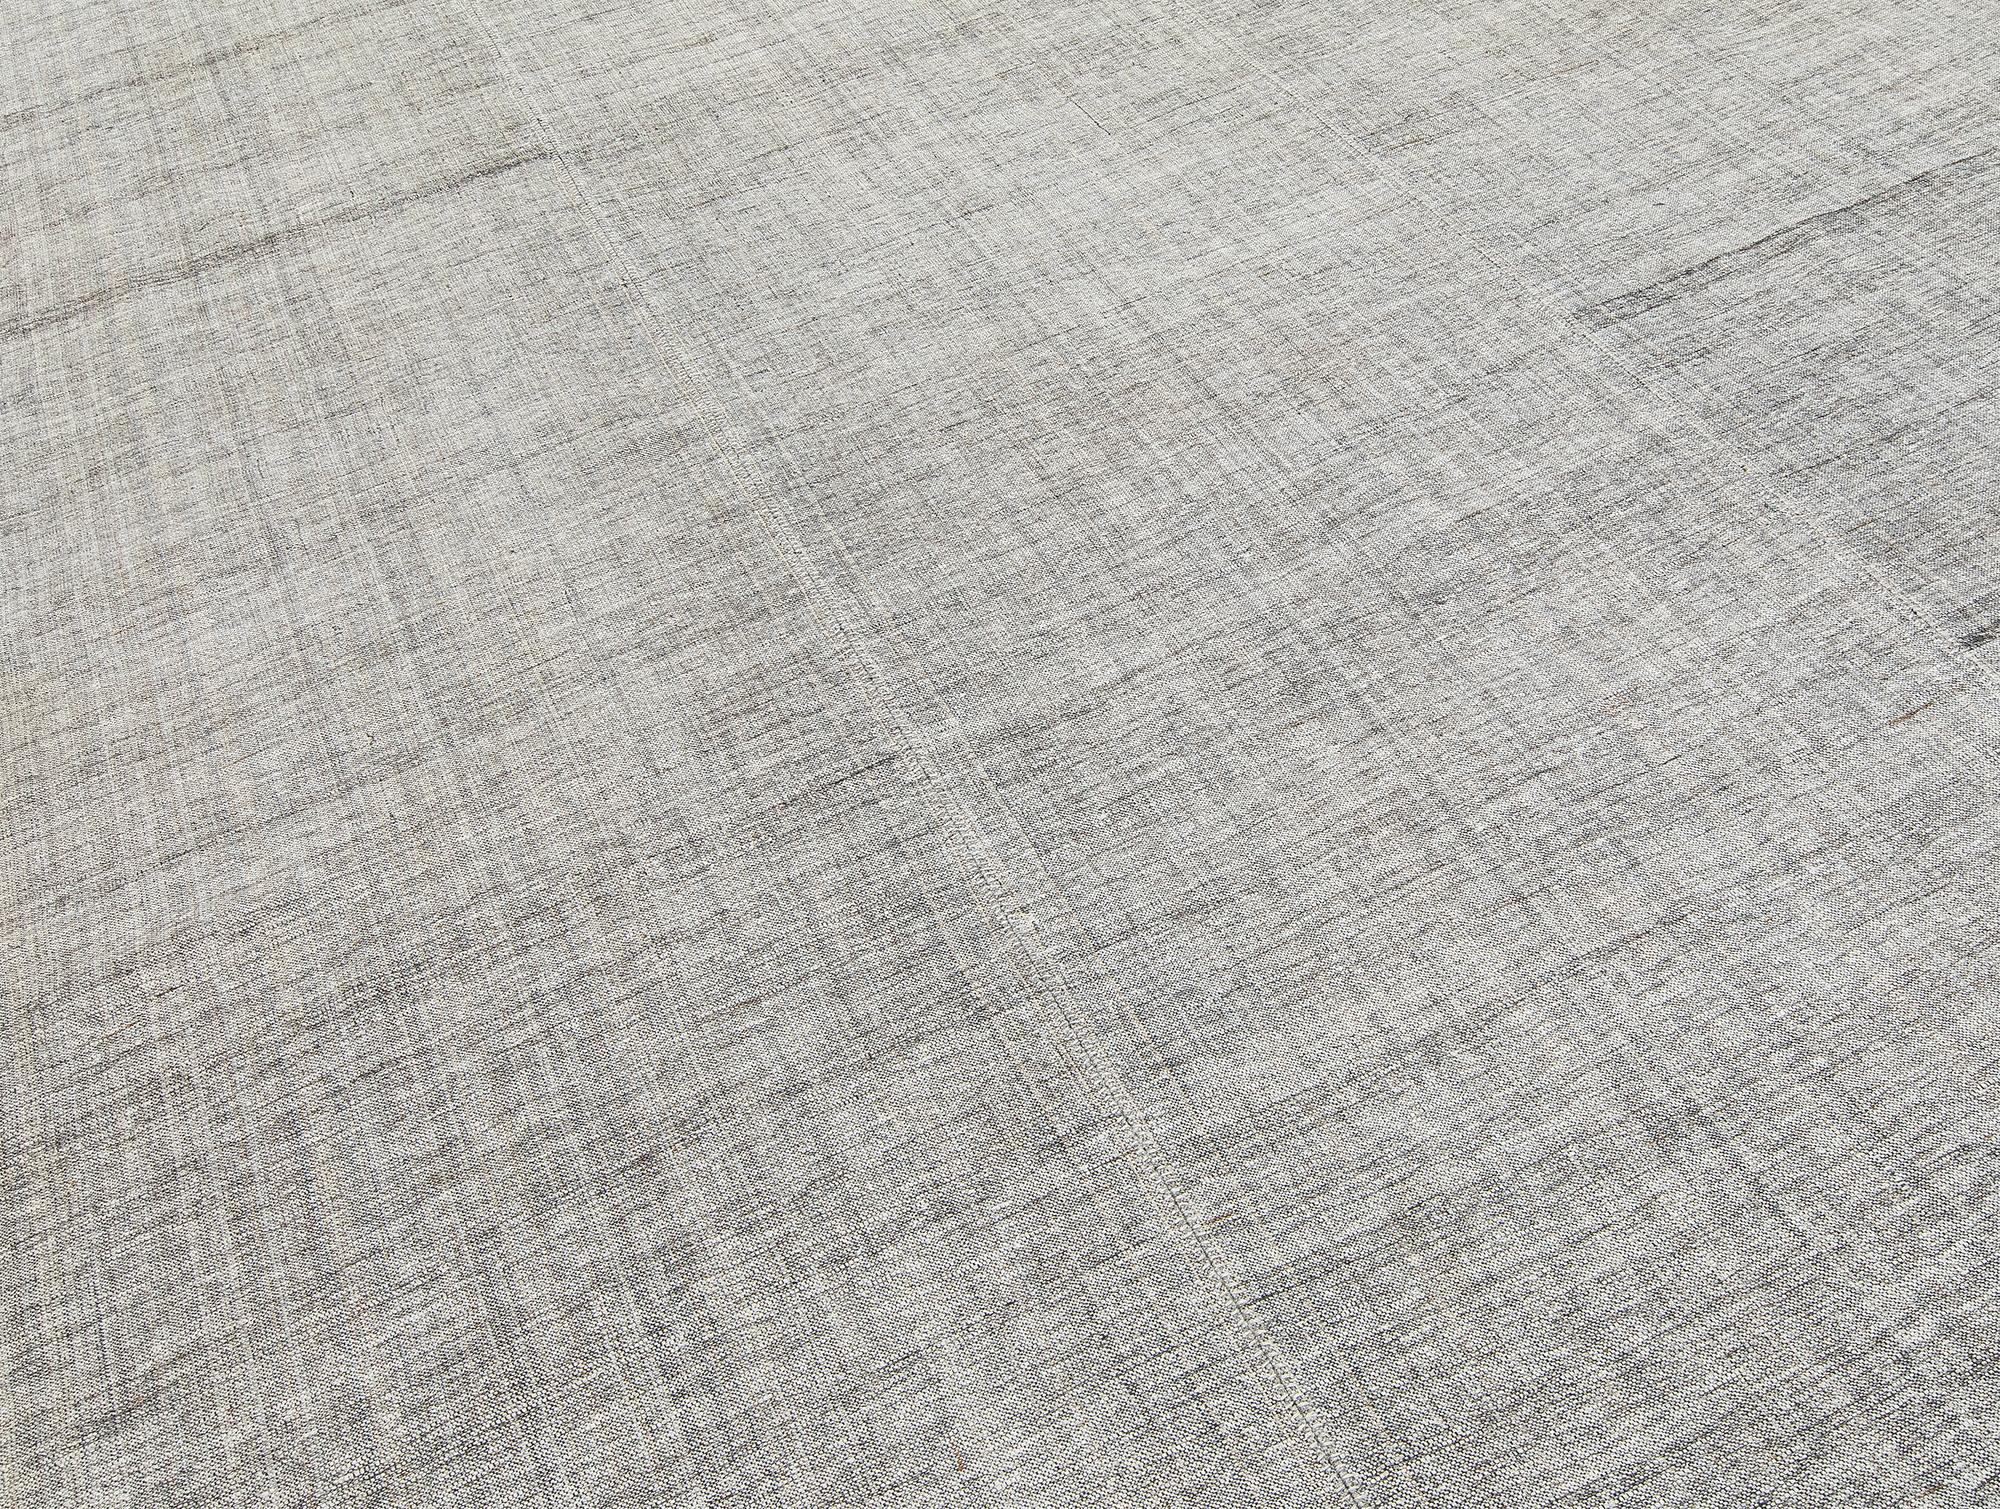 Dieser alte flachgewebte Pelas-Teppich wurde Mitte des 20. Jahrhunderts im Iran handgefertigt. Dieser Teppich ist aus 100% handgesponnener Wolle und natürlichen Farbstoffen handgewebt. Kundenspezifische Größen und Farben verfügbar 

Größe: 6'4 